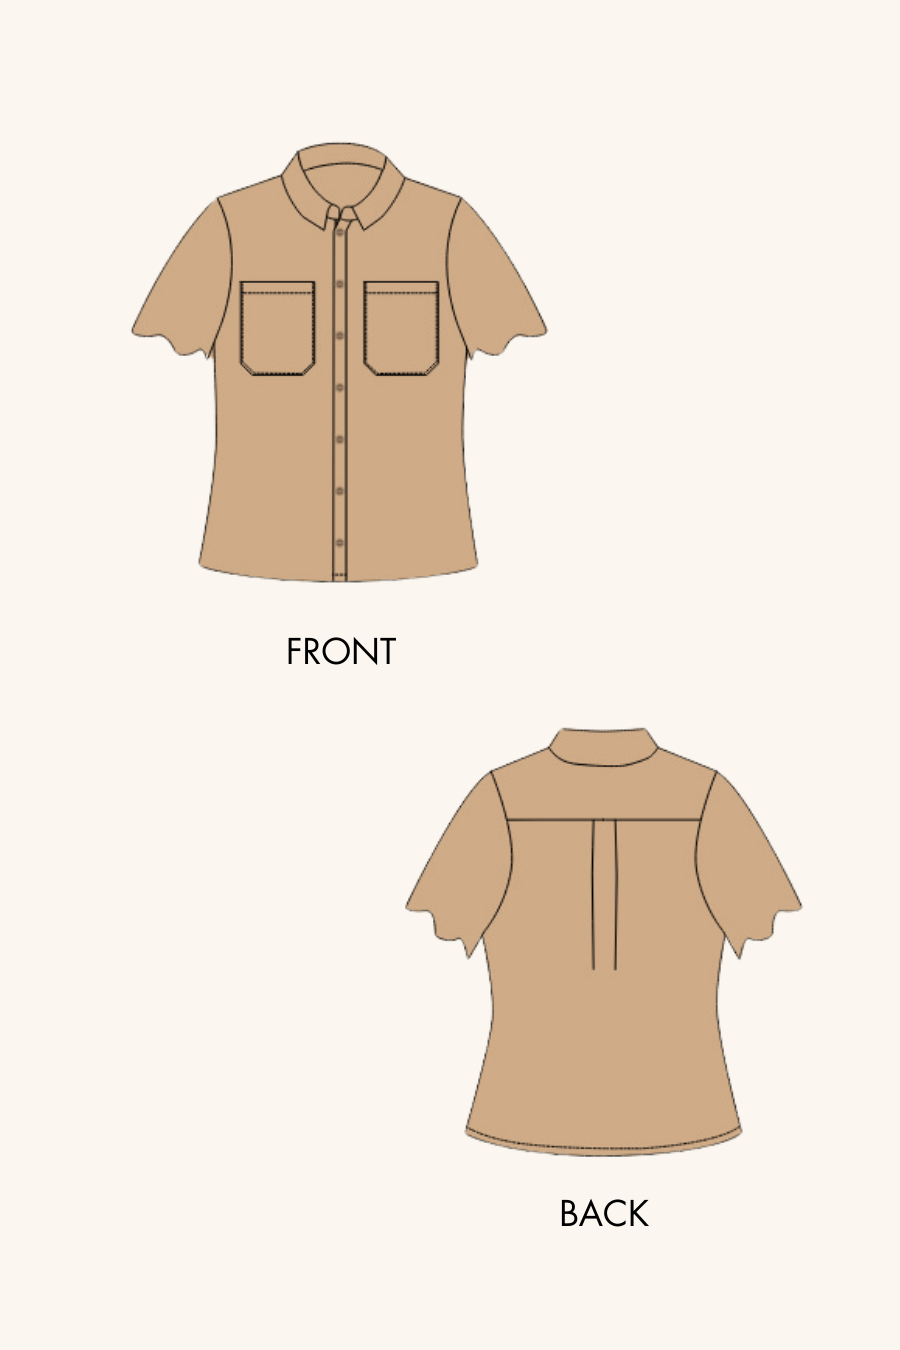 2D Sketch of short sleeve shirt